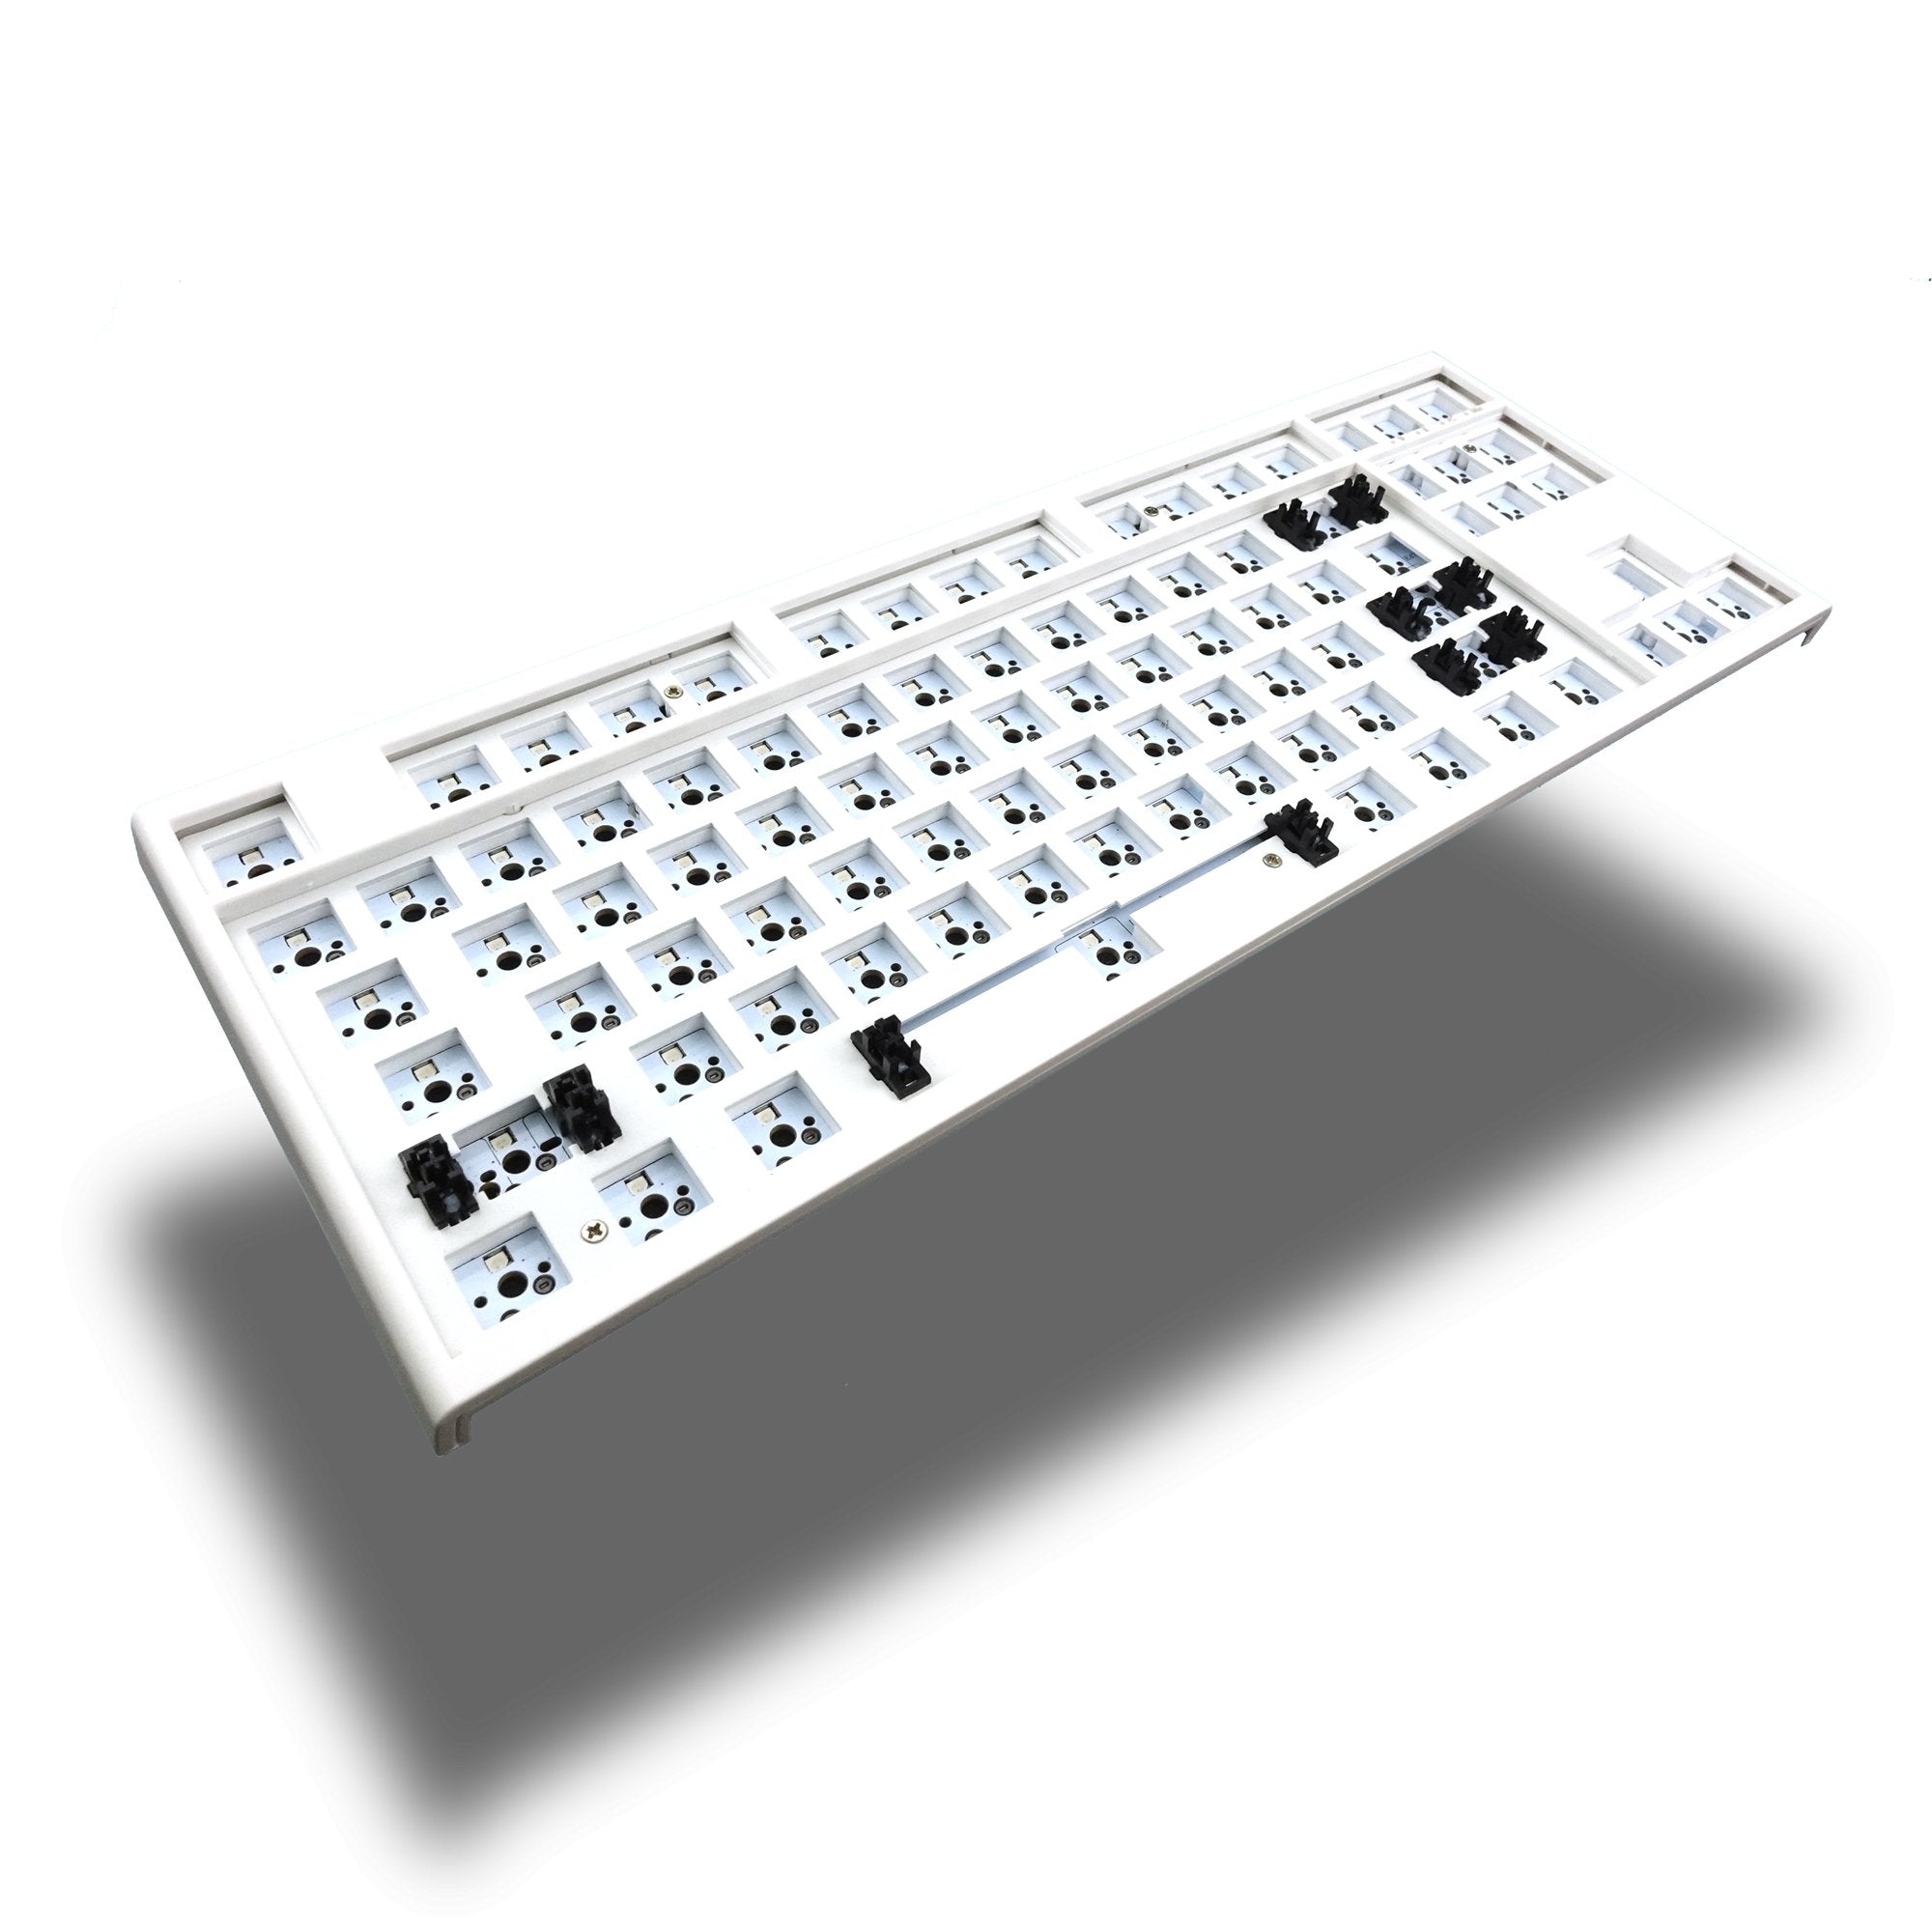 Alpha 87 TKL 80% Mechanical Keyboard Barebone Kit - Goblintechkeys